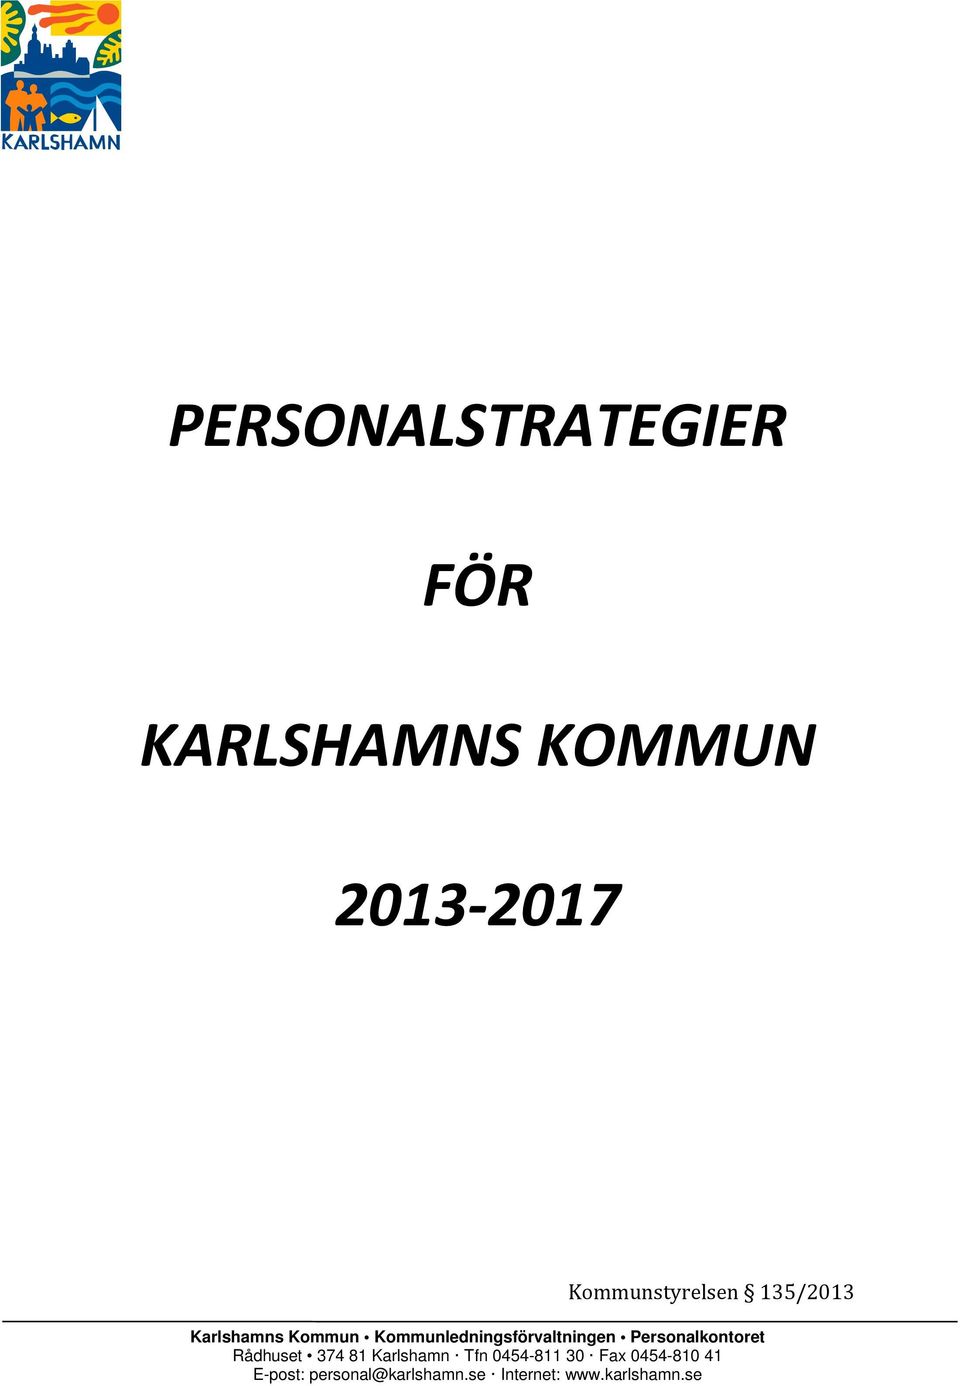 Kommunledningsförvaltningen Rådhuset 374 81 Karlshamn Tfn